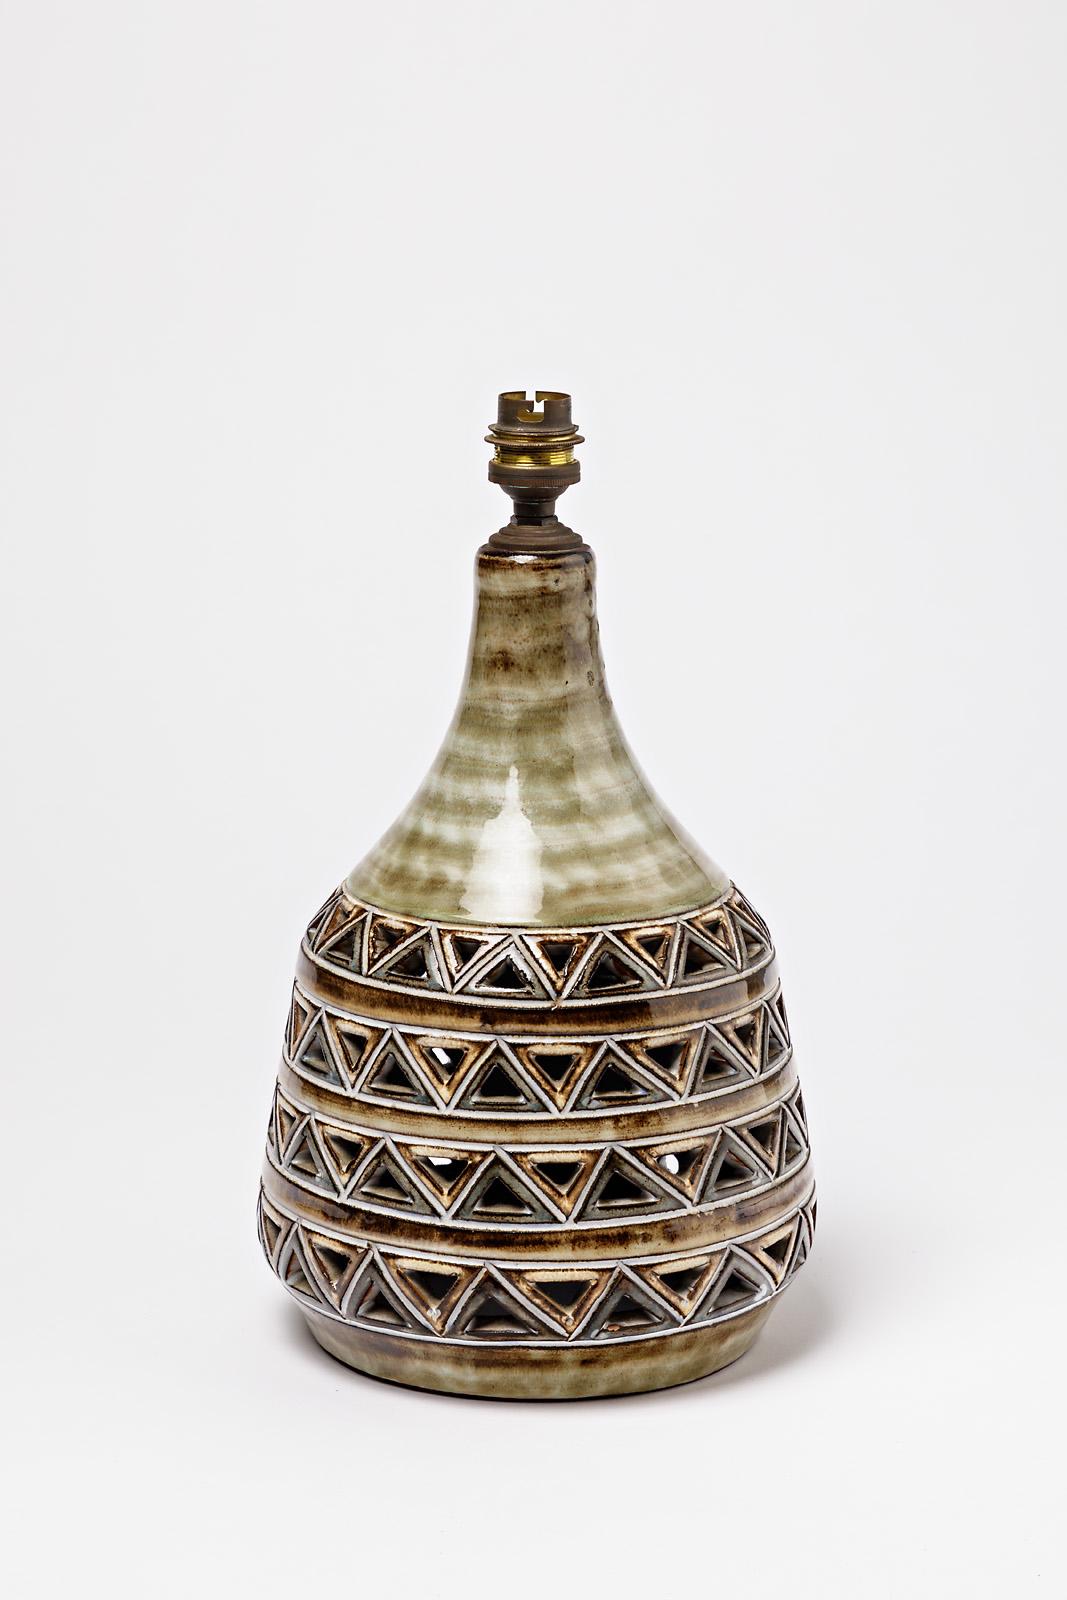 A ceramic lamp, signed 